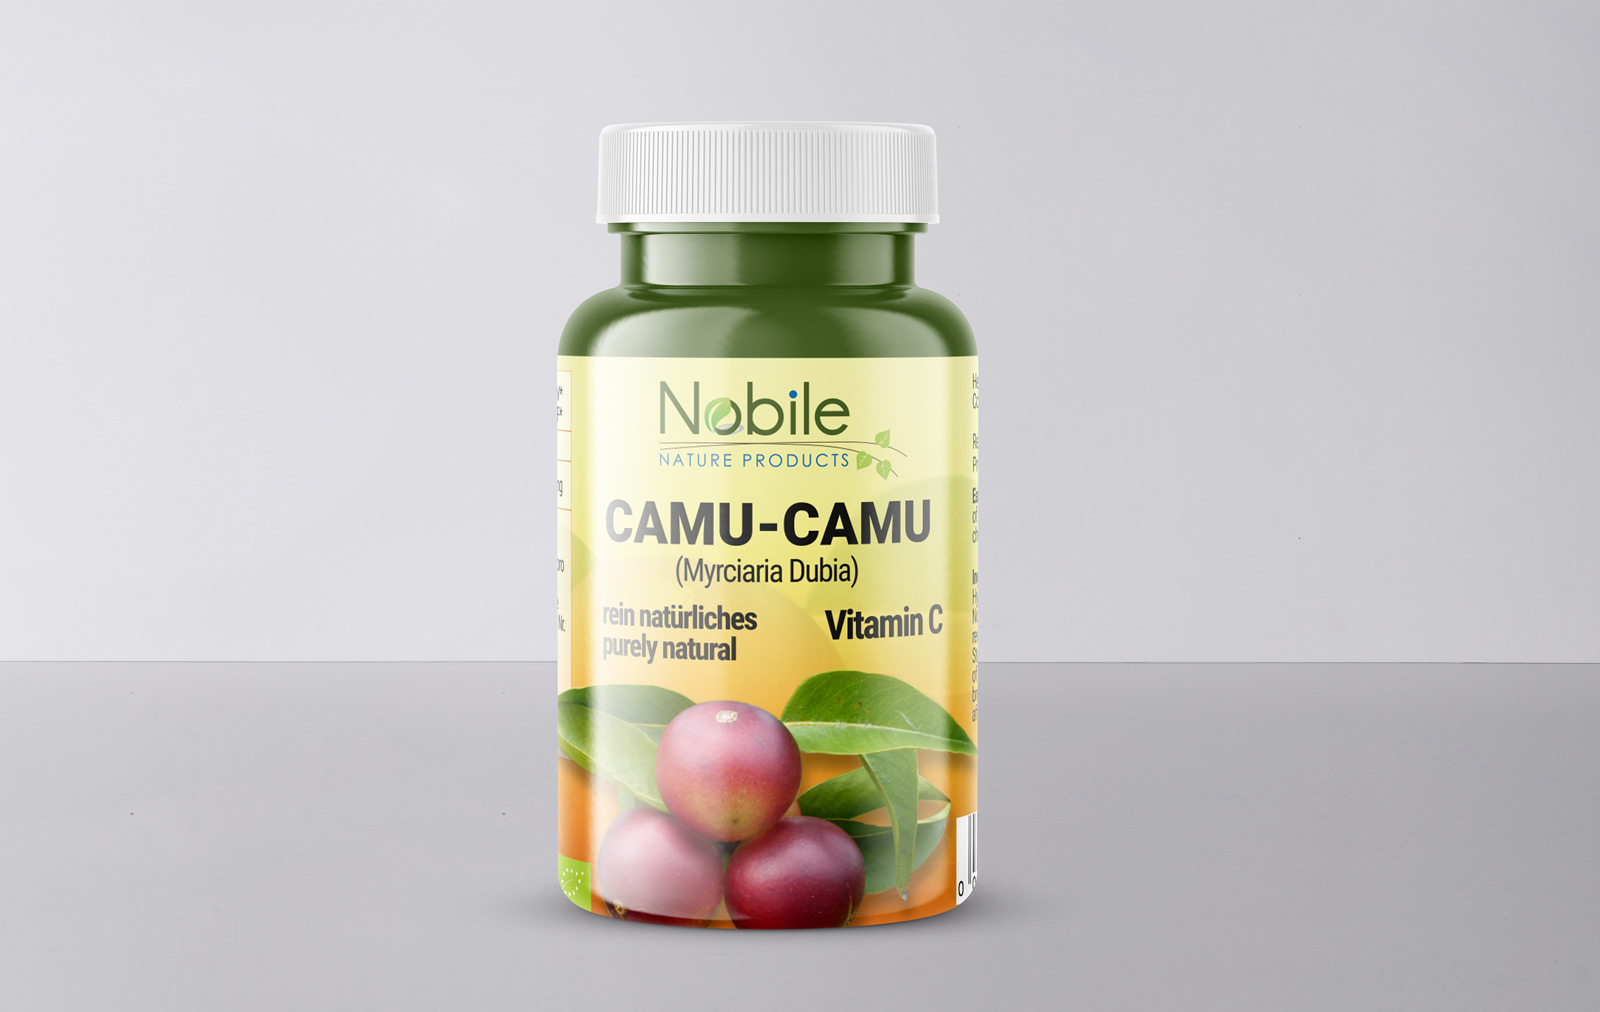 Diseño gráfico y creativo de etiquetas y packaging para CAMU-CAMU de Nobile Nature Products en Alemania